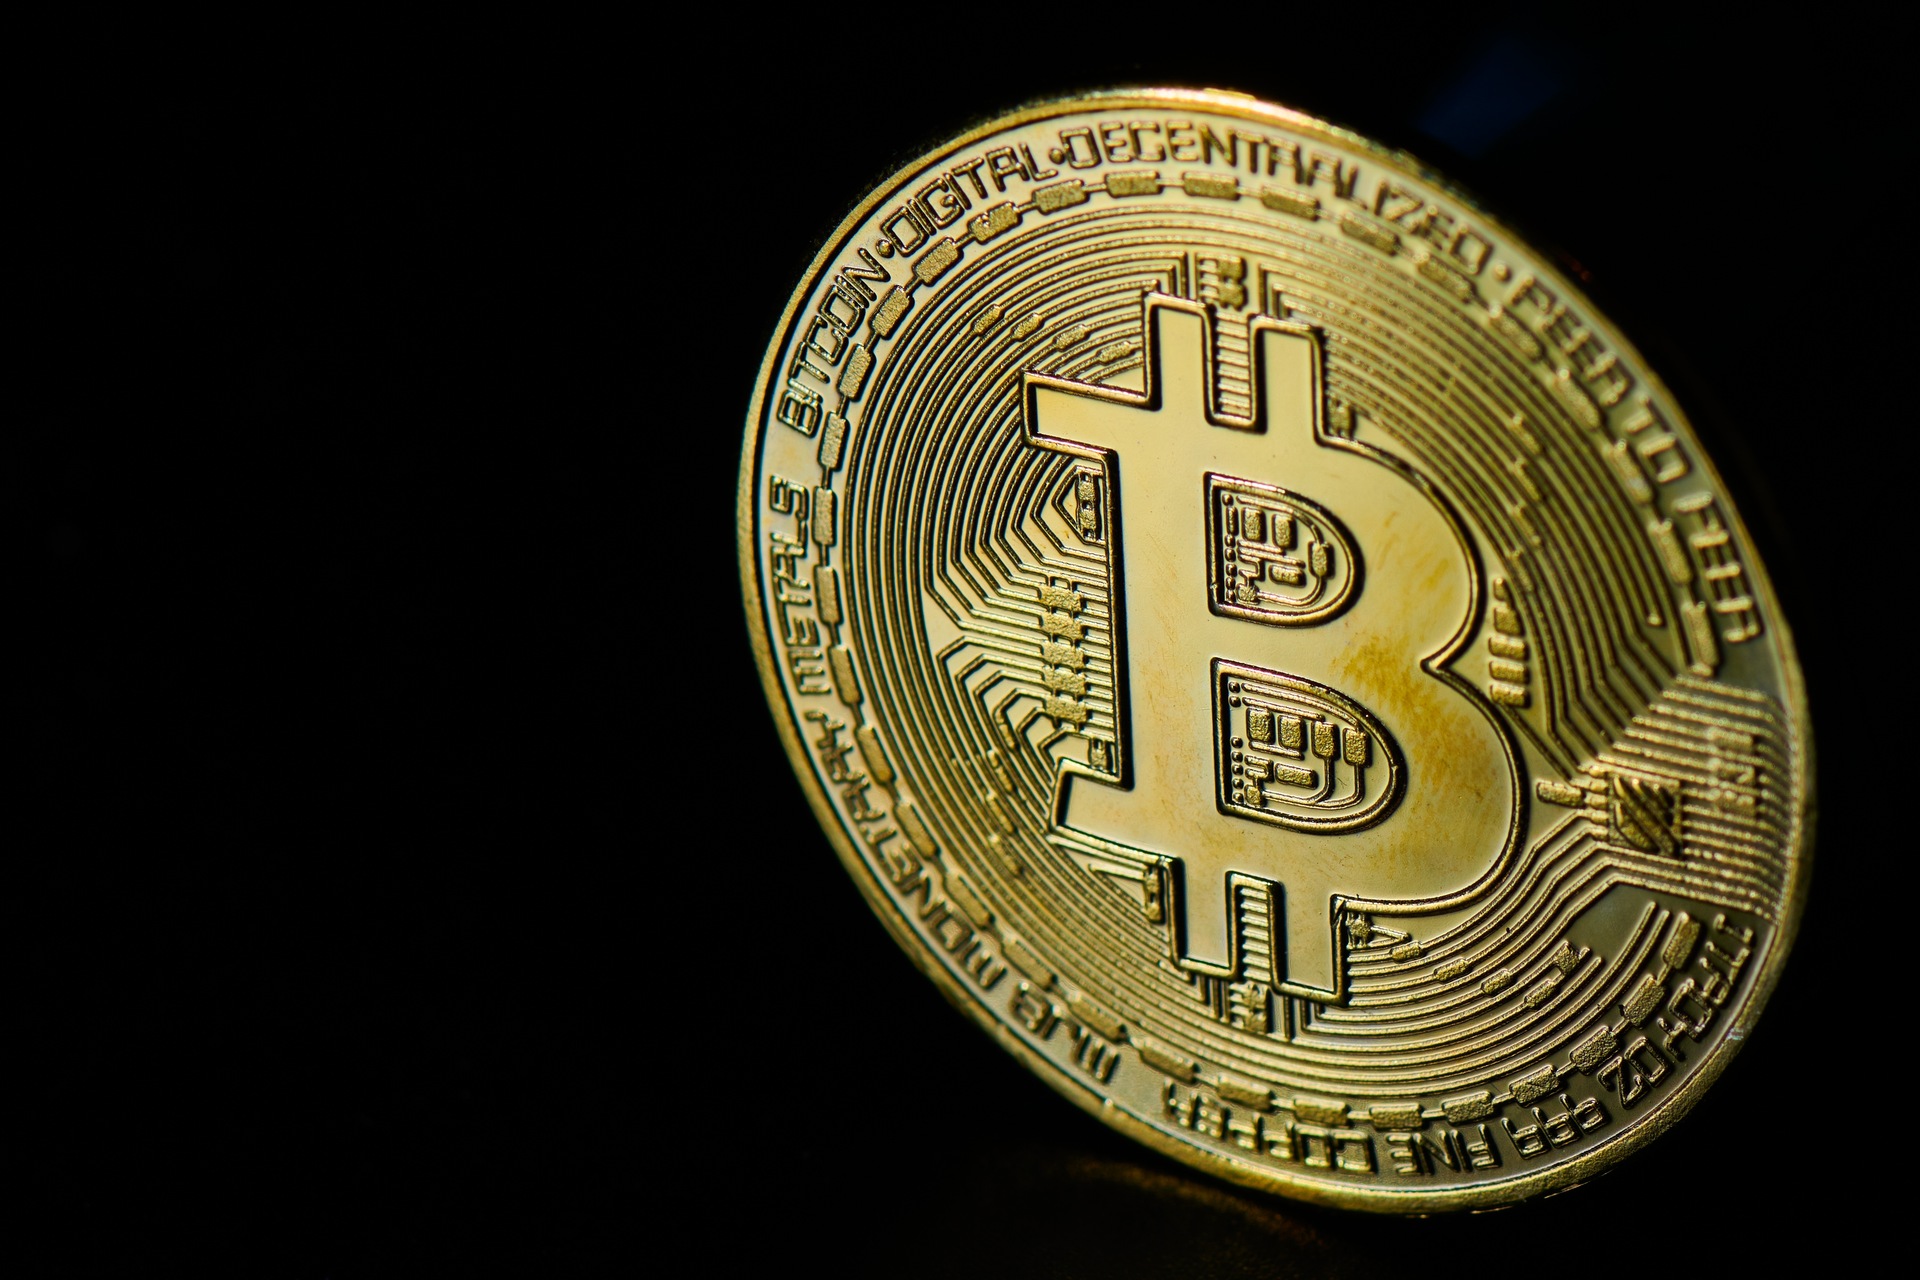 Kriptovaliutos: Bitcoin yra kriptovaliuta ir tarptautinė valiutų mokėjimo sistema, kurią 2009 metais sukūrė anoniminis išradėjas, žinomas slapyvardžiu „Satoshi Nakamoto“, kuris 2008 metų pabaigoje sukūrė idėją, kurią pats pristatė internete.